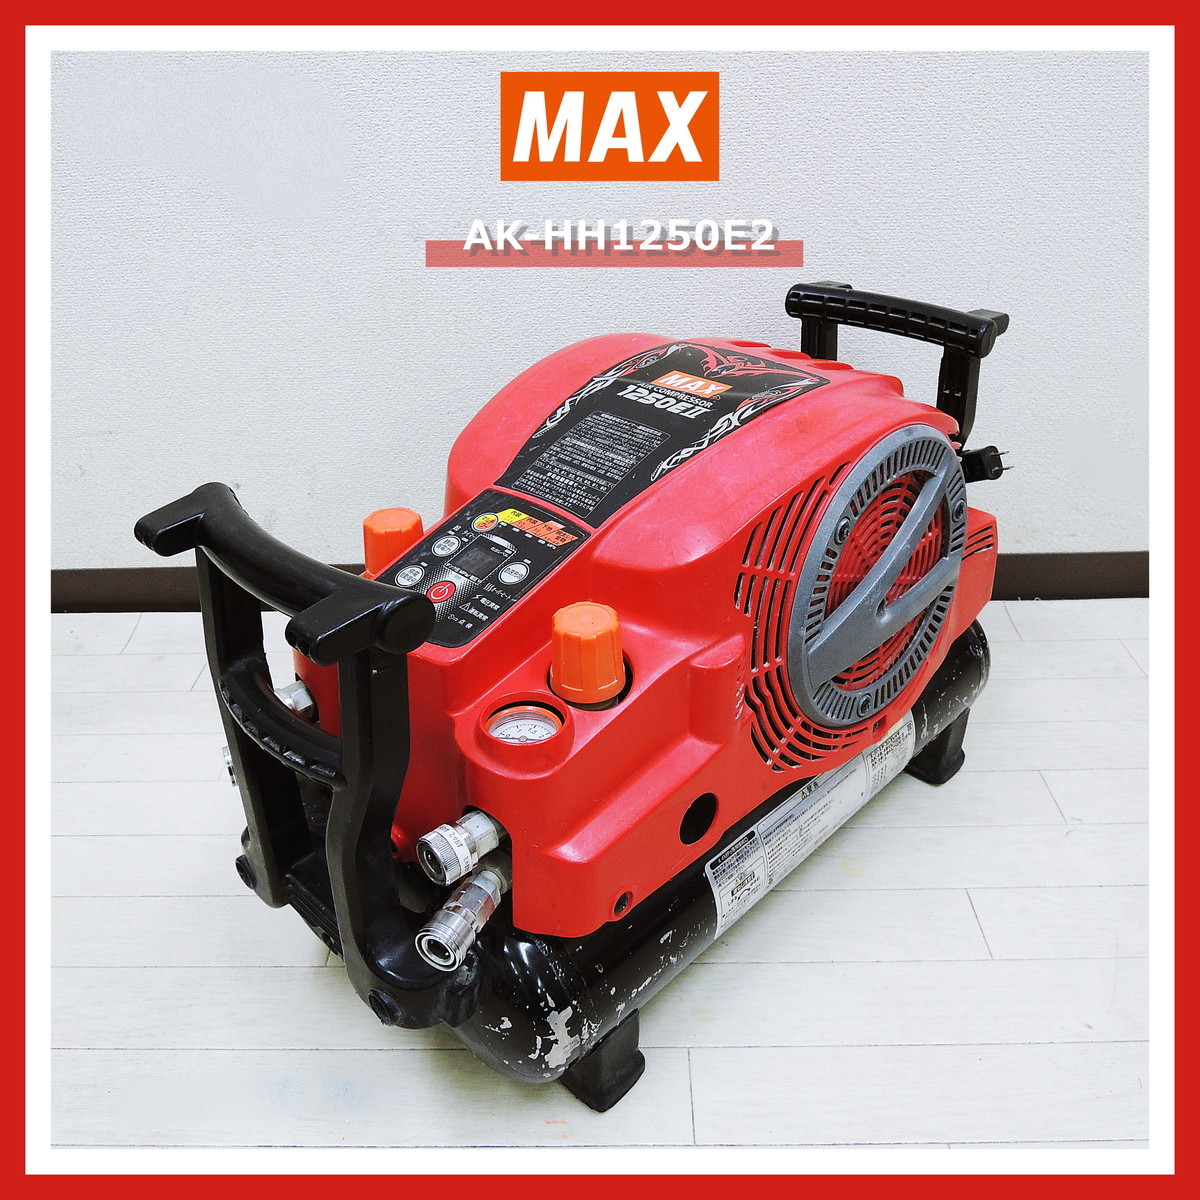 【売れ筋】 【即決!早い者勝ち!】 MAX AK-HH1250E2 スーパー エアコンプレッサ 高圧 AK-HH1250EII マックス エアー コンプレッサー コンプレッサー